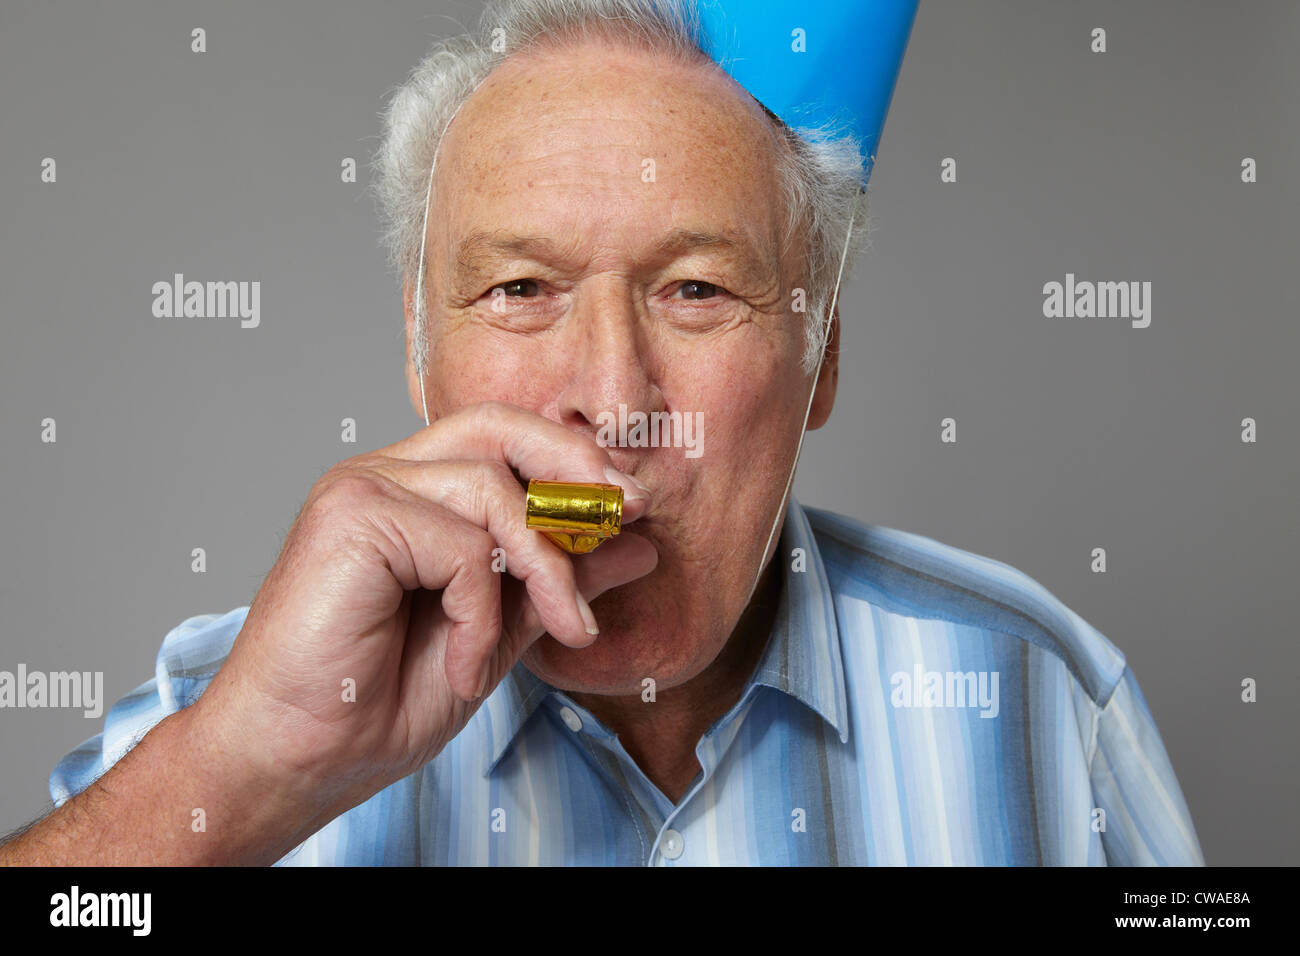 Senior man with party blower, portrait Banque D'Images